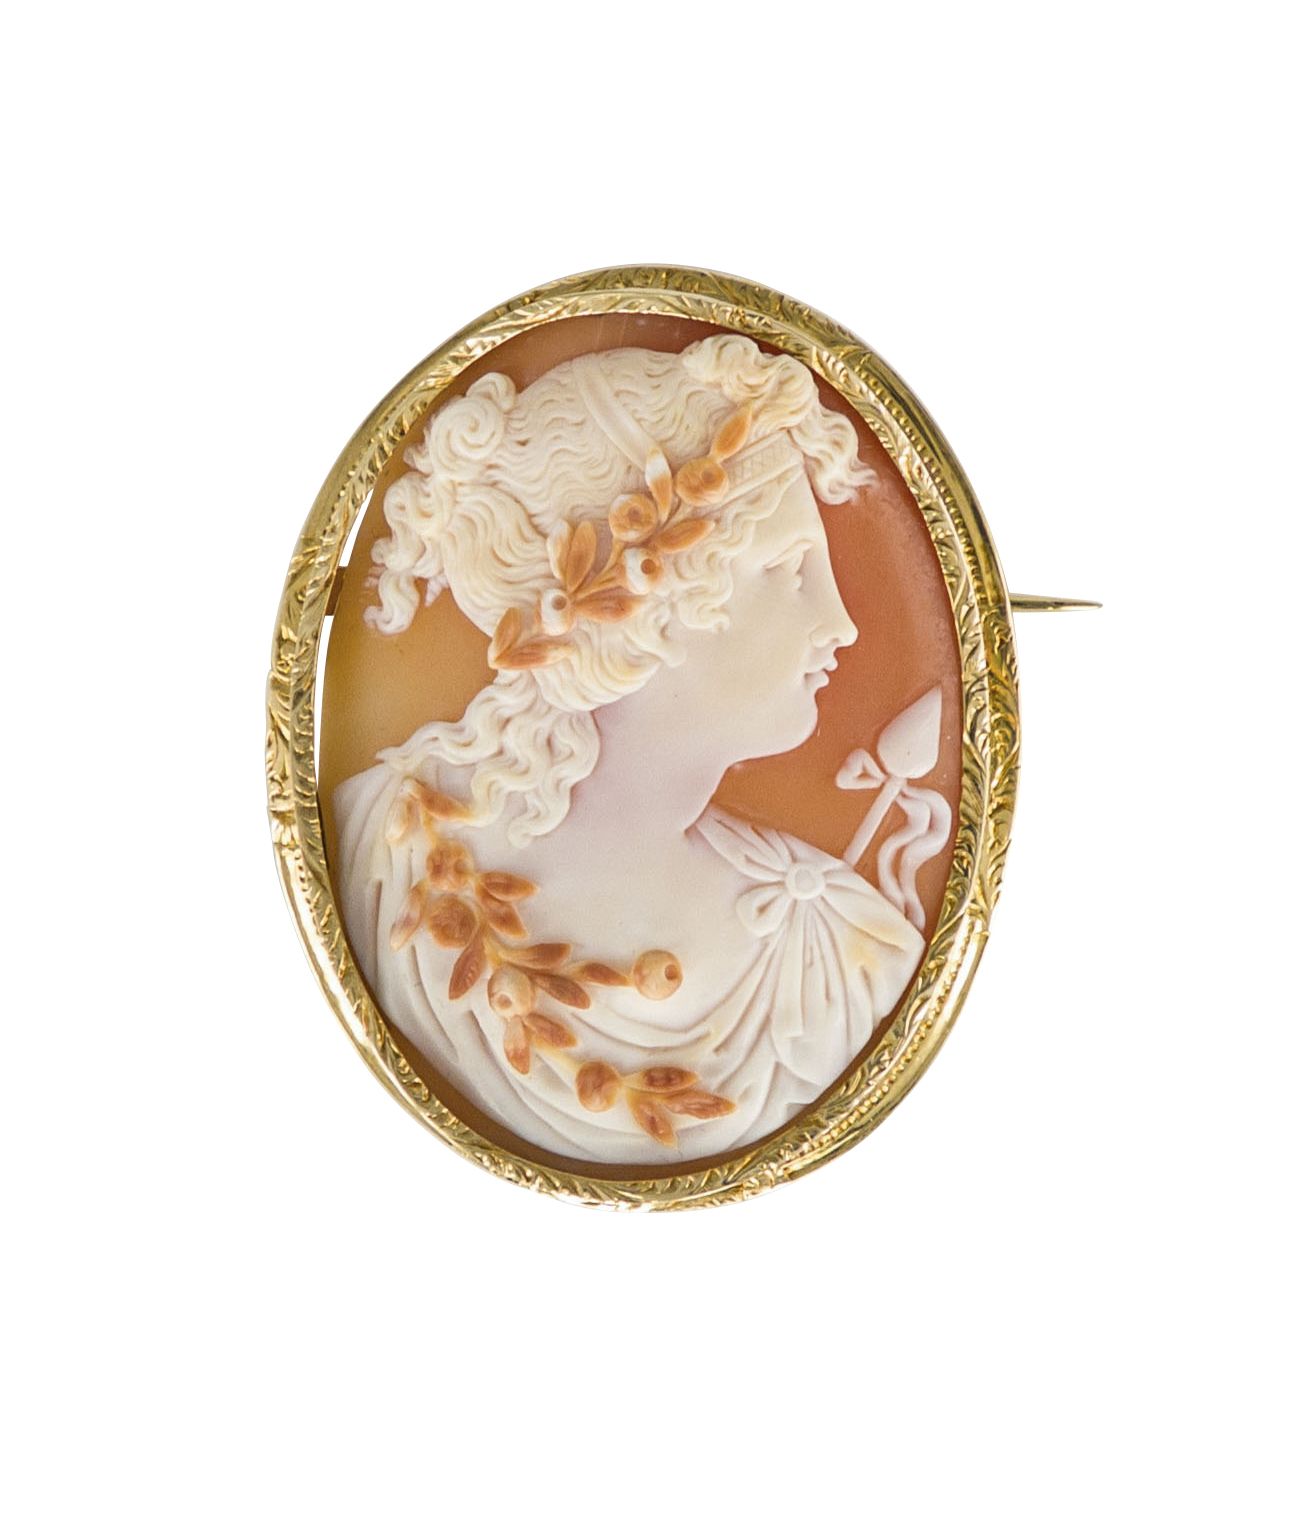 Null 一枚18K(750)金胸针，带有一个椭圆形的贝壳浮雕，代表了一个古董风格的女人的轮廓。19世纪的作品。高度：约4.8厘米。毛重 : 12,9 g